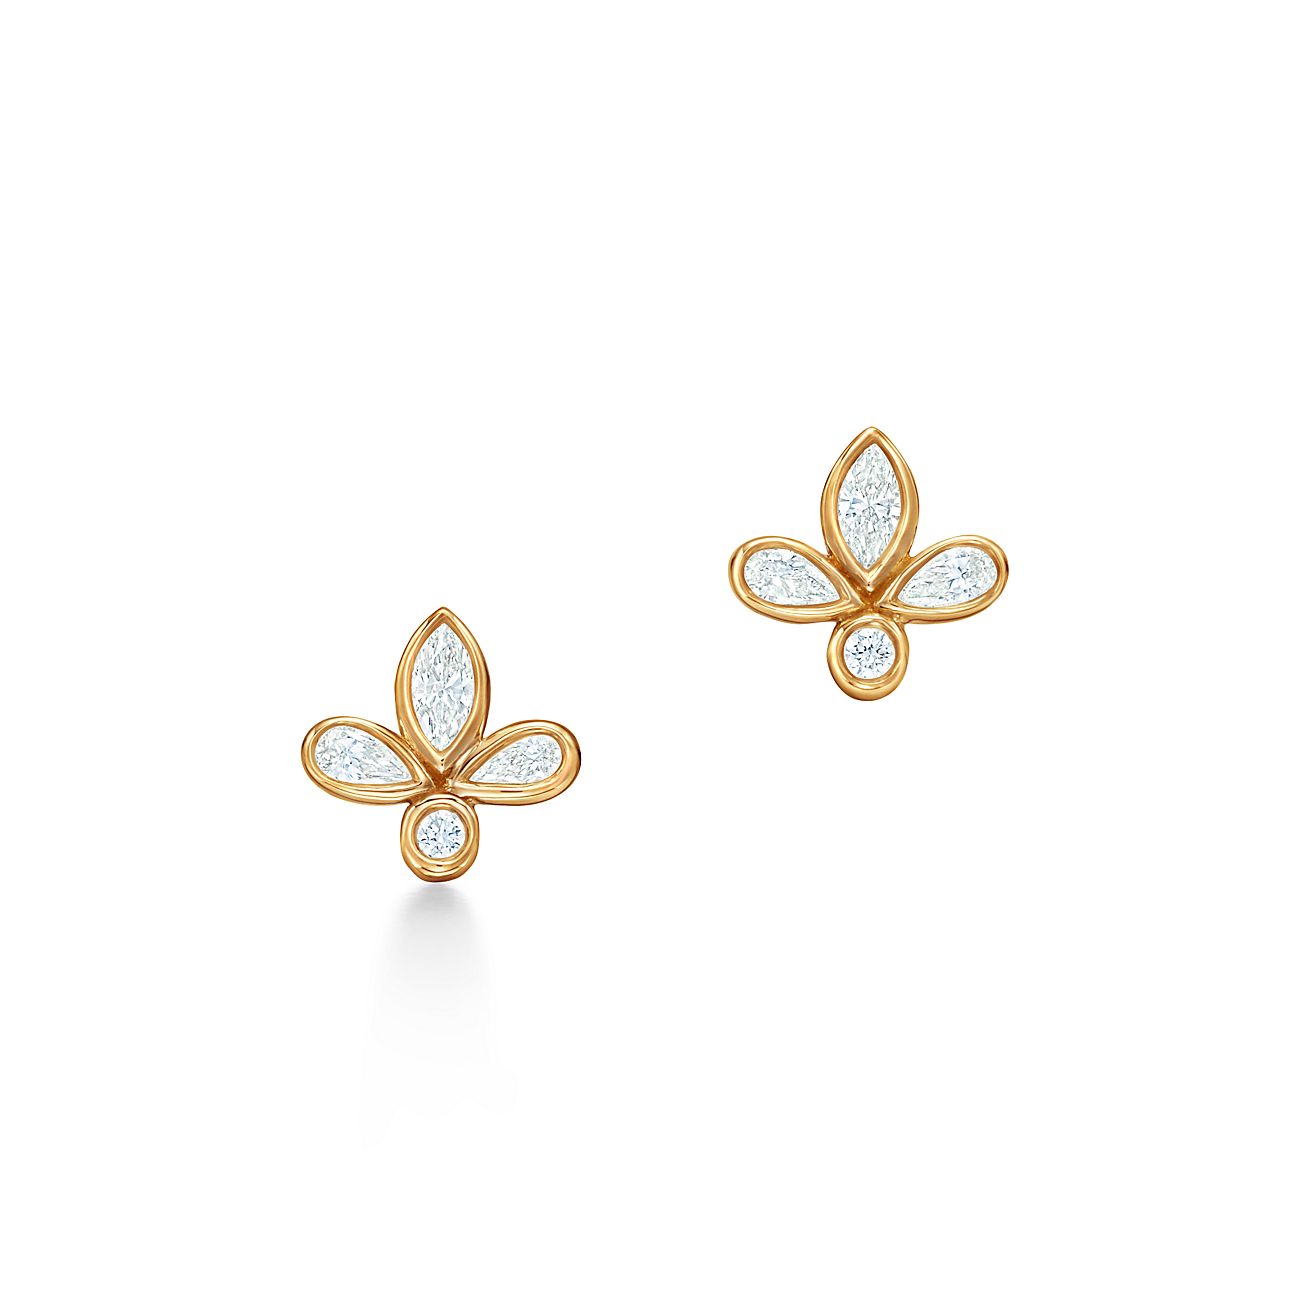 Tiffany Fleur de Lis earrings in 18k gold with diamonds, mini. | Tiffany & Co.